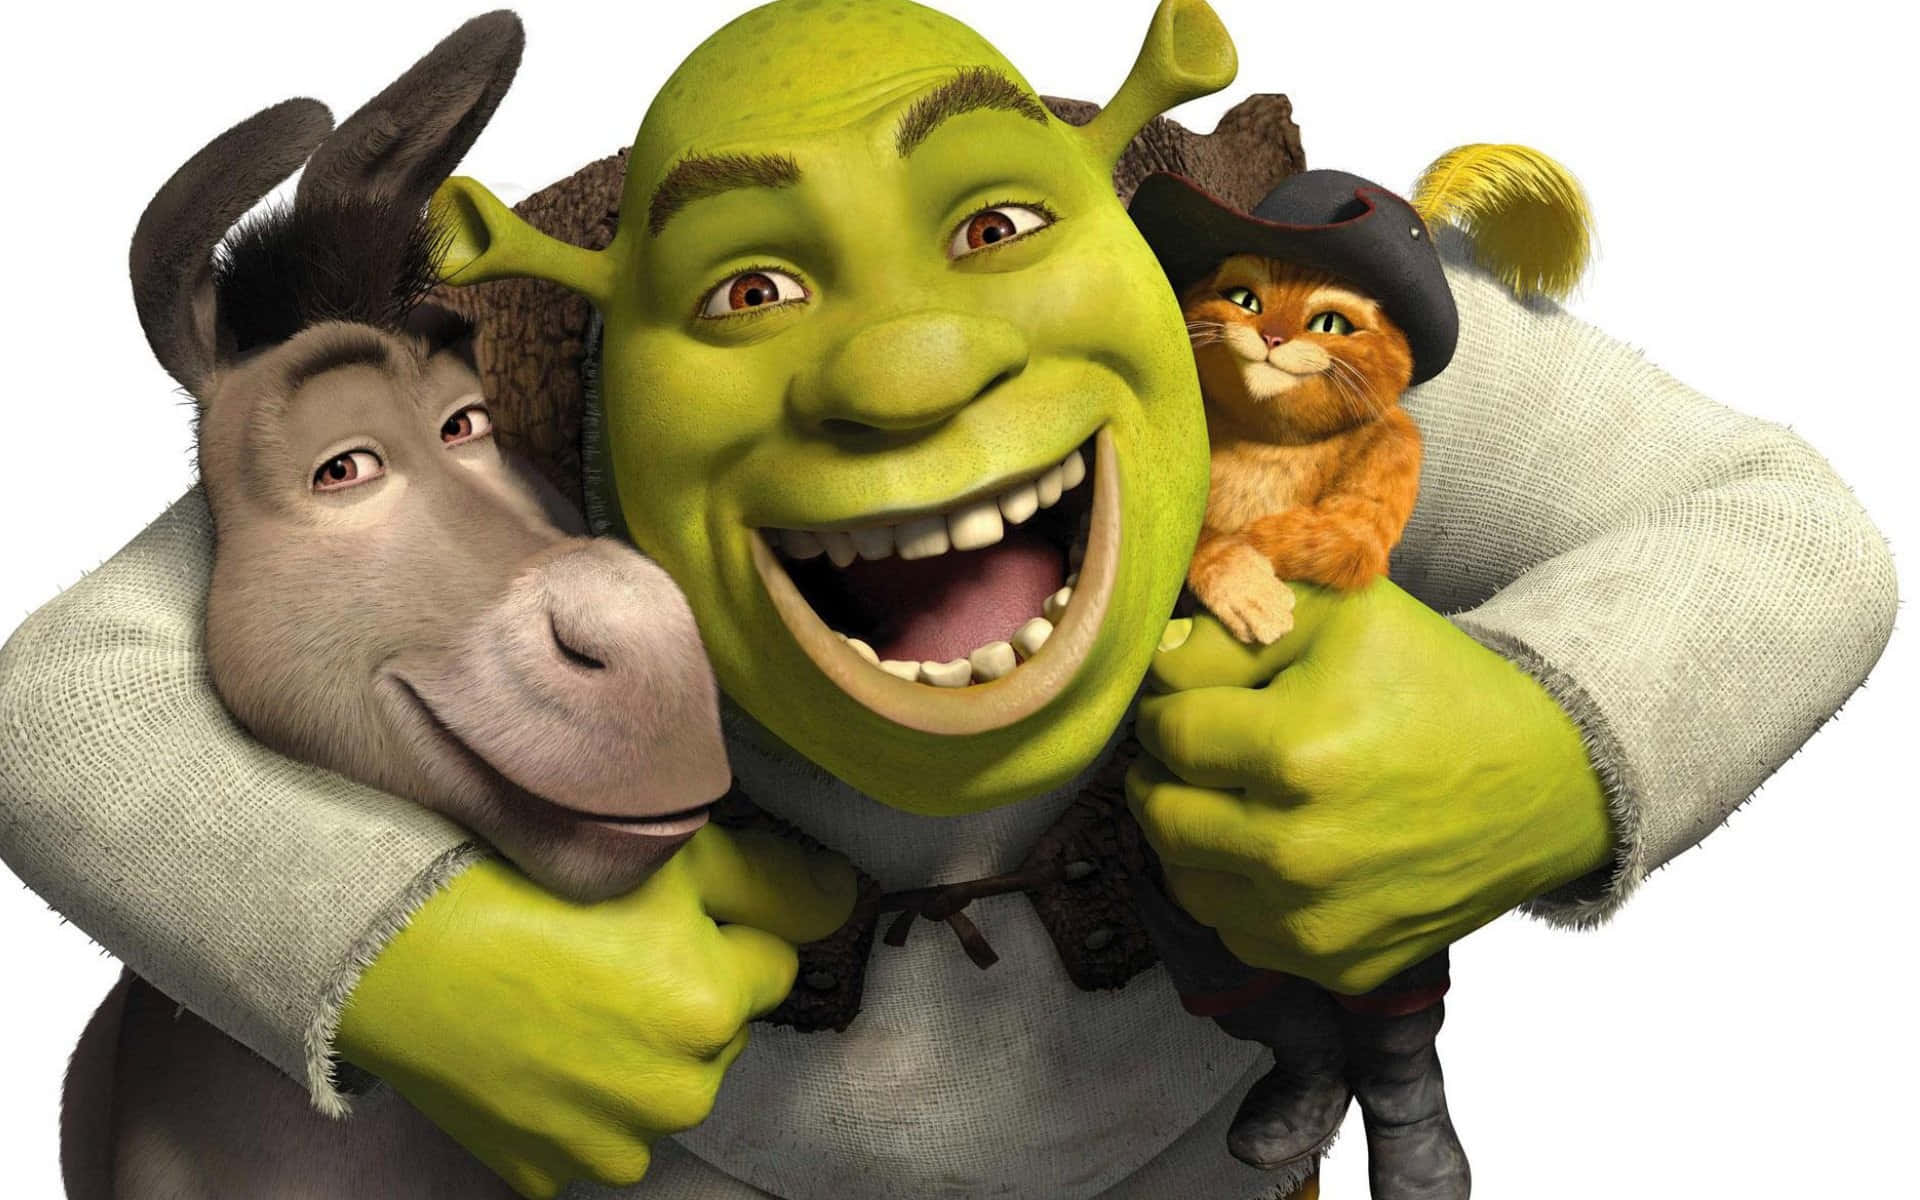 Denikoniske Shrek Bringer Latter Og Glæde Til Millioner Af Seere Over Hele Verden.